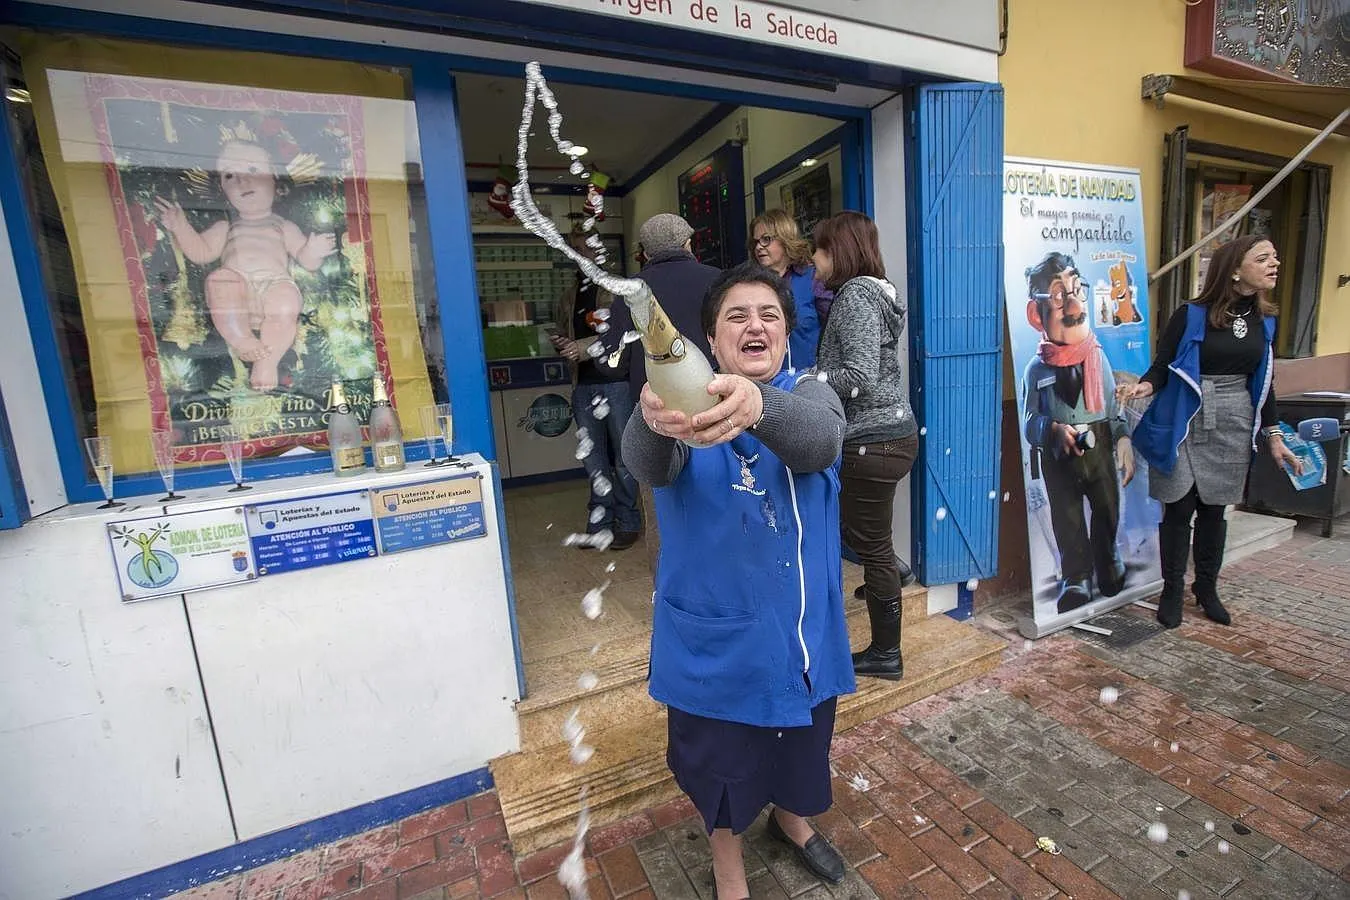 La vendedora de la administracción de loteria número uno de Las Torres de Cotillas «Virgen de la Salceda», Rosario Fernández, celebra con cava, que han vendido 15o décimos del cuarto premio de la lotería de Navidad, el 52215.